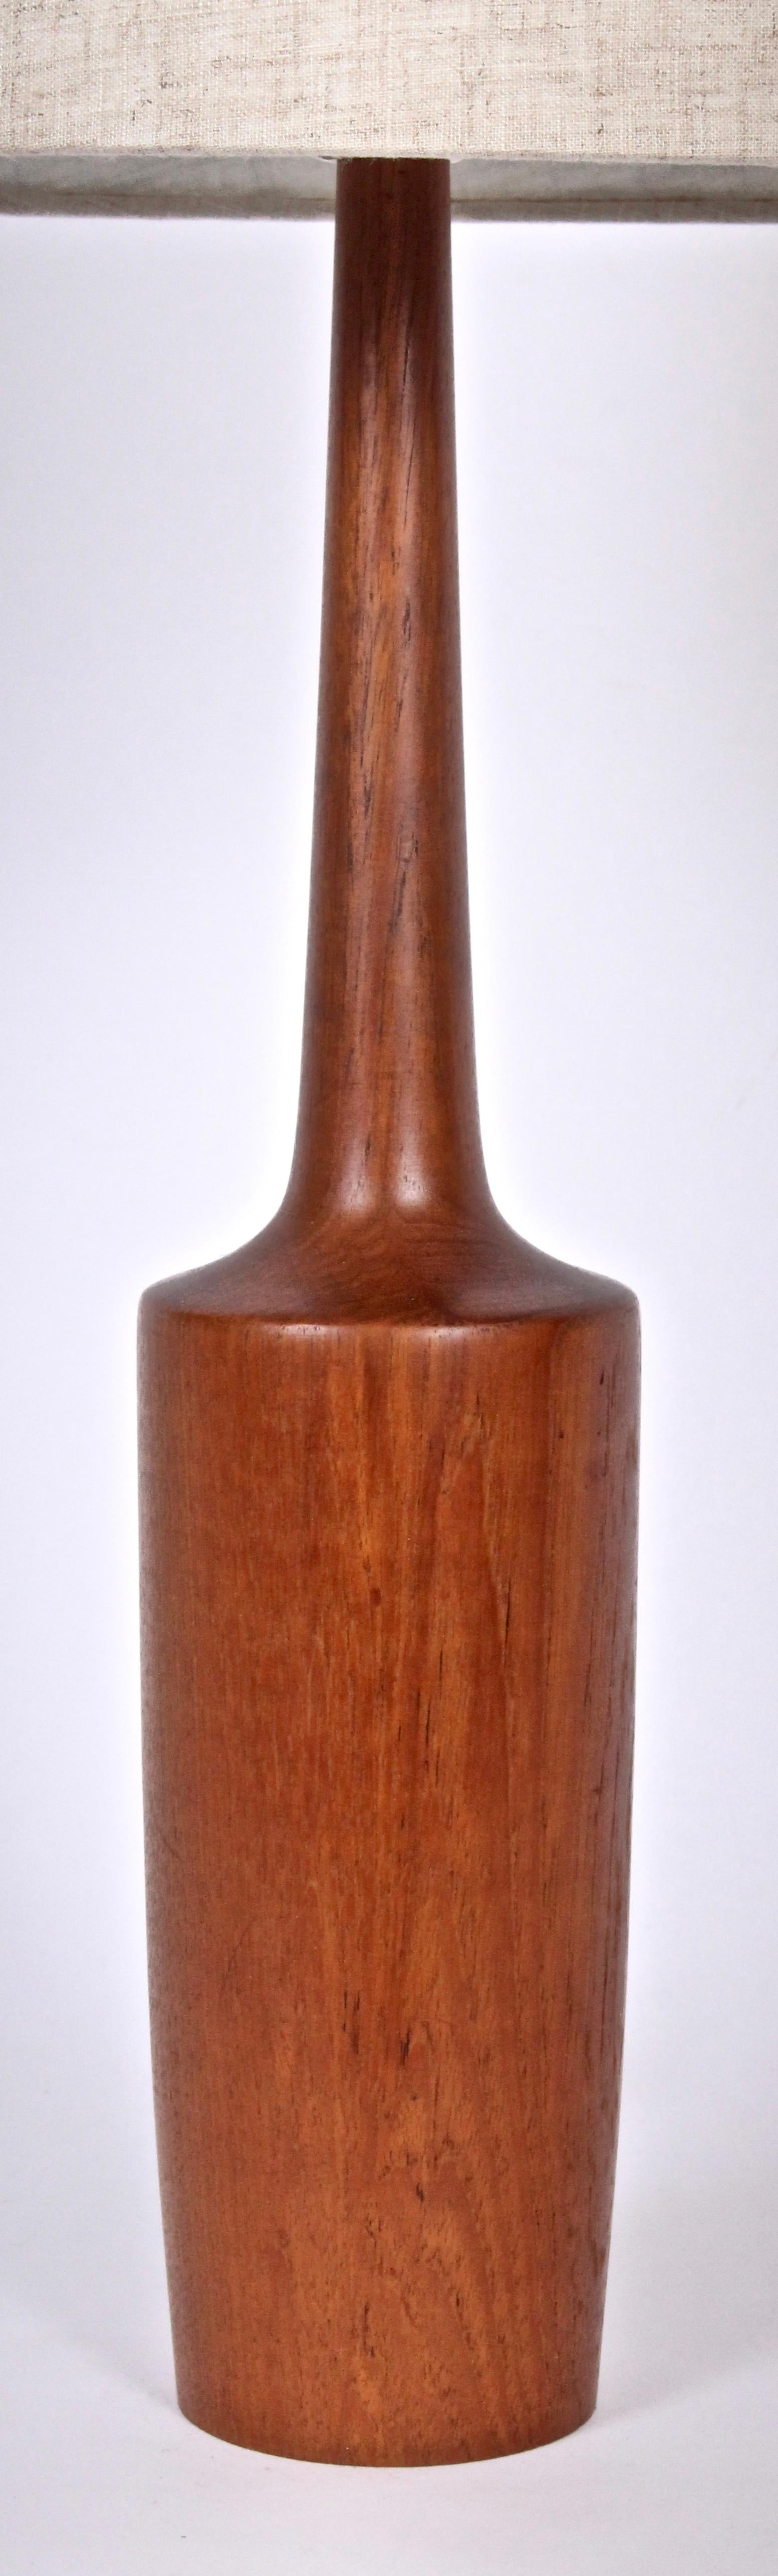 Lampe de table en teck massif équilibré de style scandinave moderne, lampe de chevet. Il présente une forme de quille de bowling élancée, au grain vif, réalisée à partir d'une seule pièce de teck. Faible encombrement. 20H au sommet de la prise. Teck